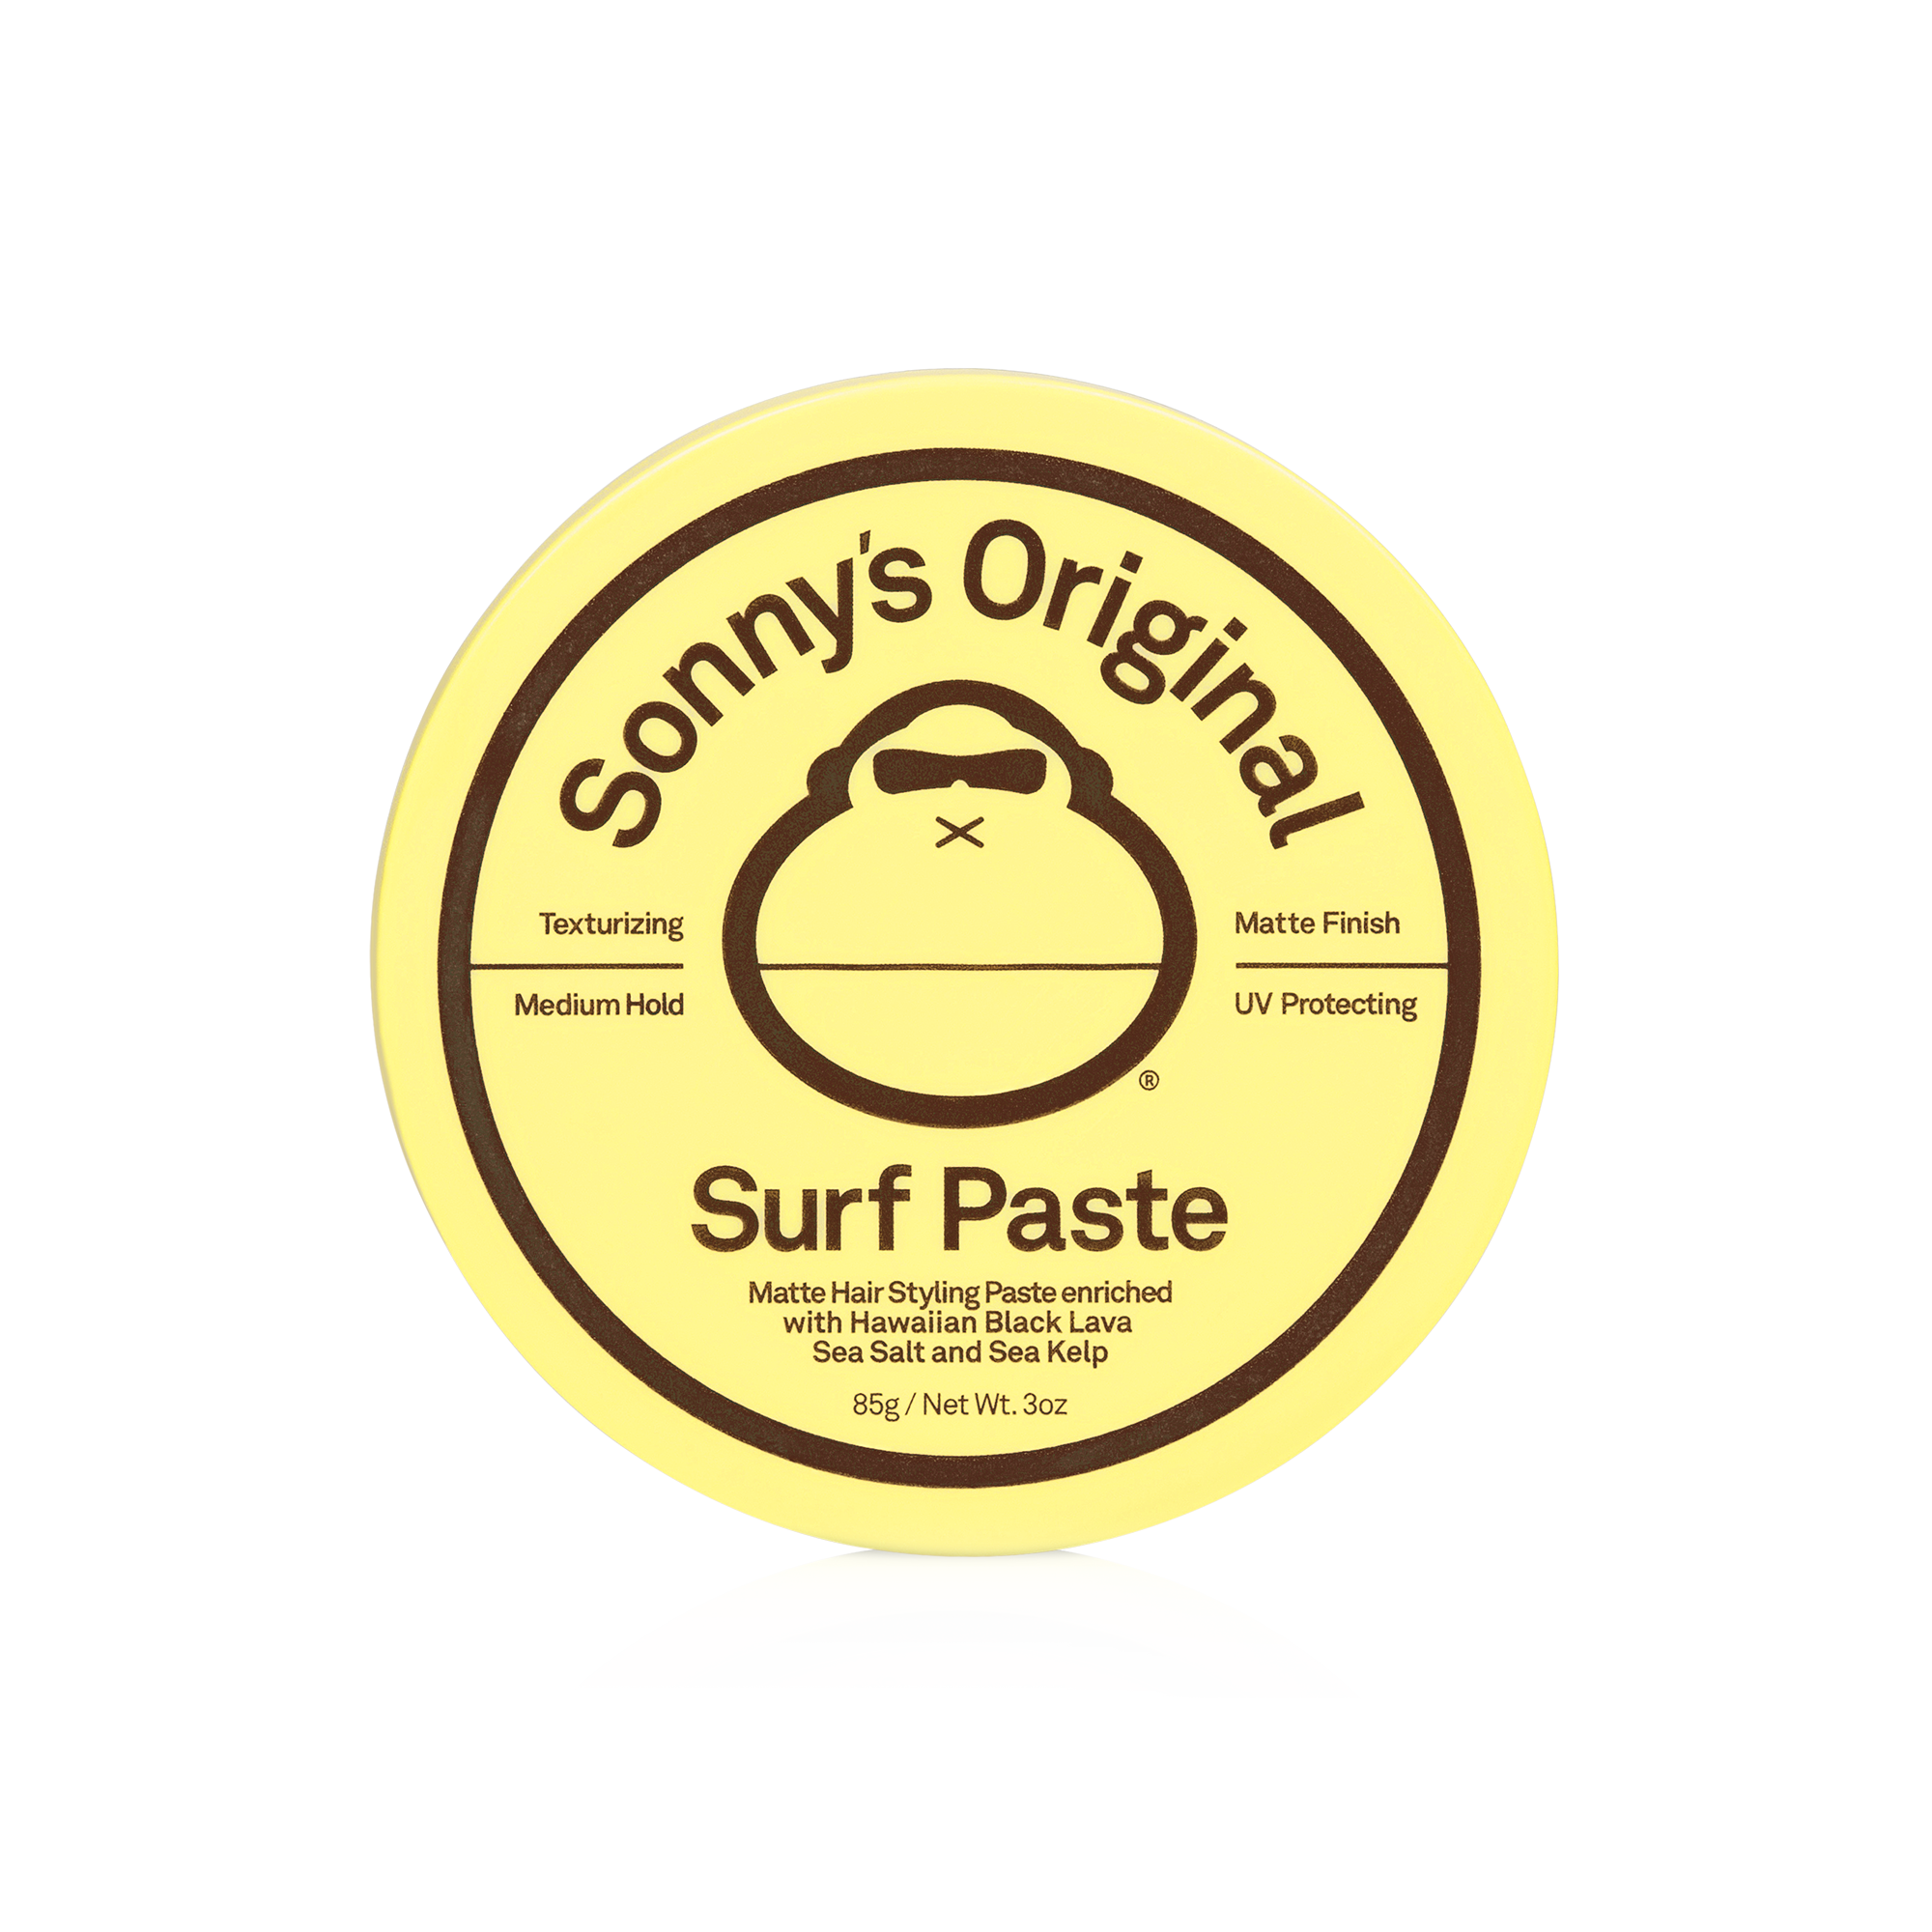 Sun Bum Sonny's Original Surf Paste, 3 OZ Net Wt